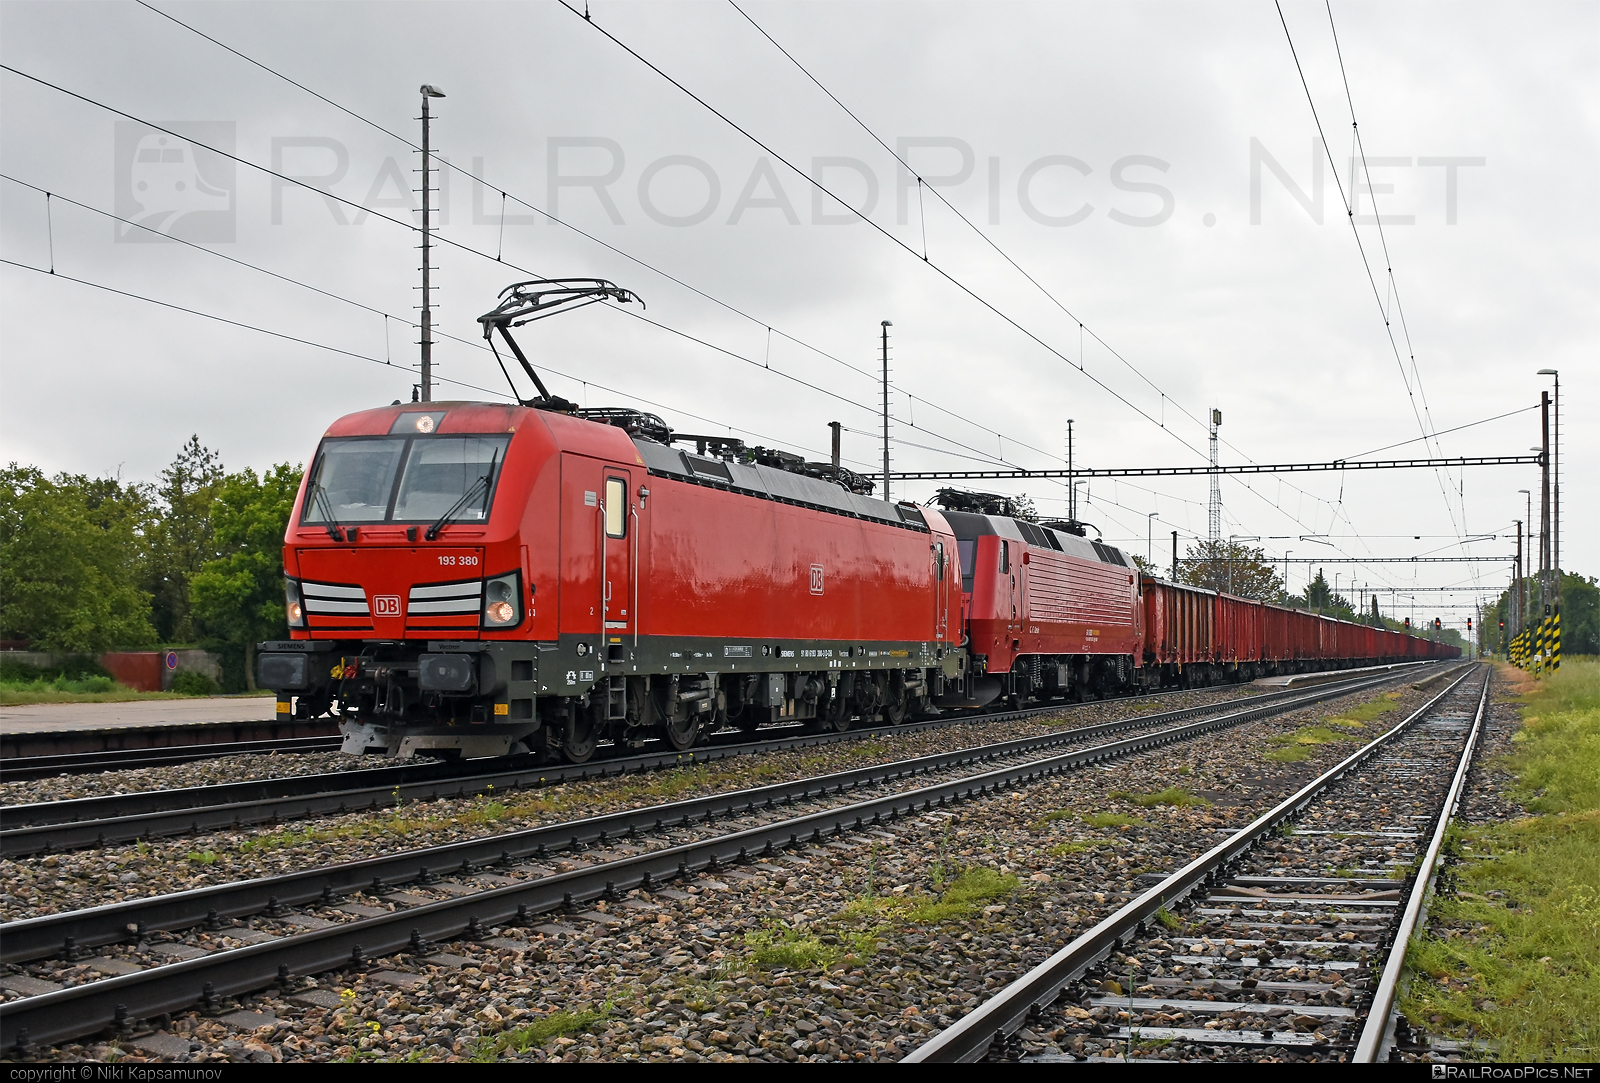 Siemens Vectron MS - 193 380 operated by DB Cargo AG #db #dbcargo #dbcargoag #deutschebahn #dsb #openwagon #siemens #siemensvectron #siemensvectronms #vectron #vectronms